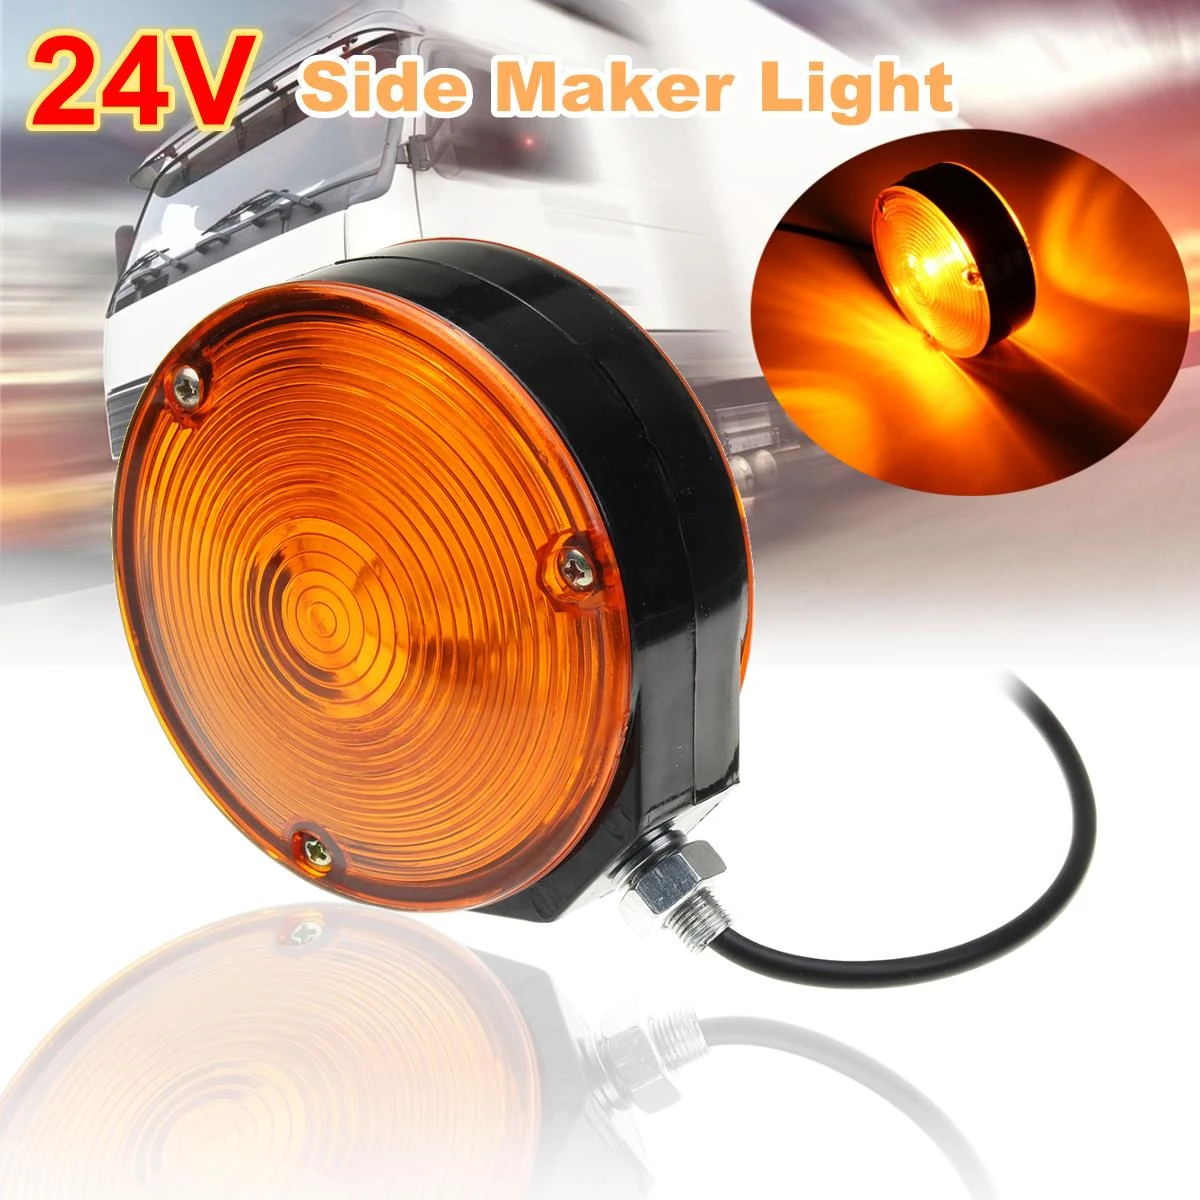 24V Side Maker Light